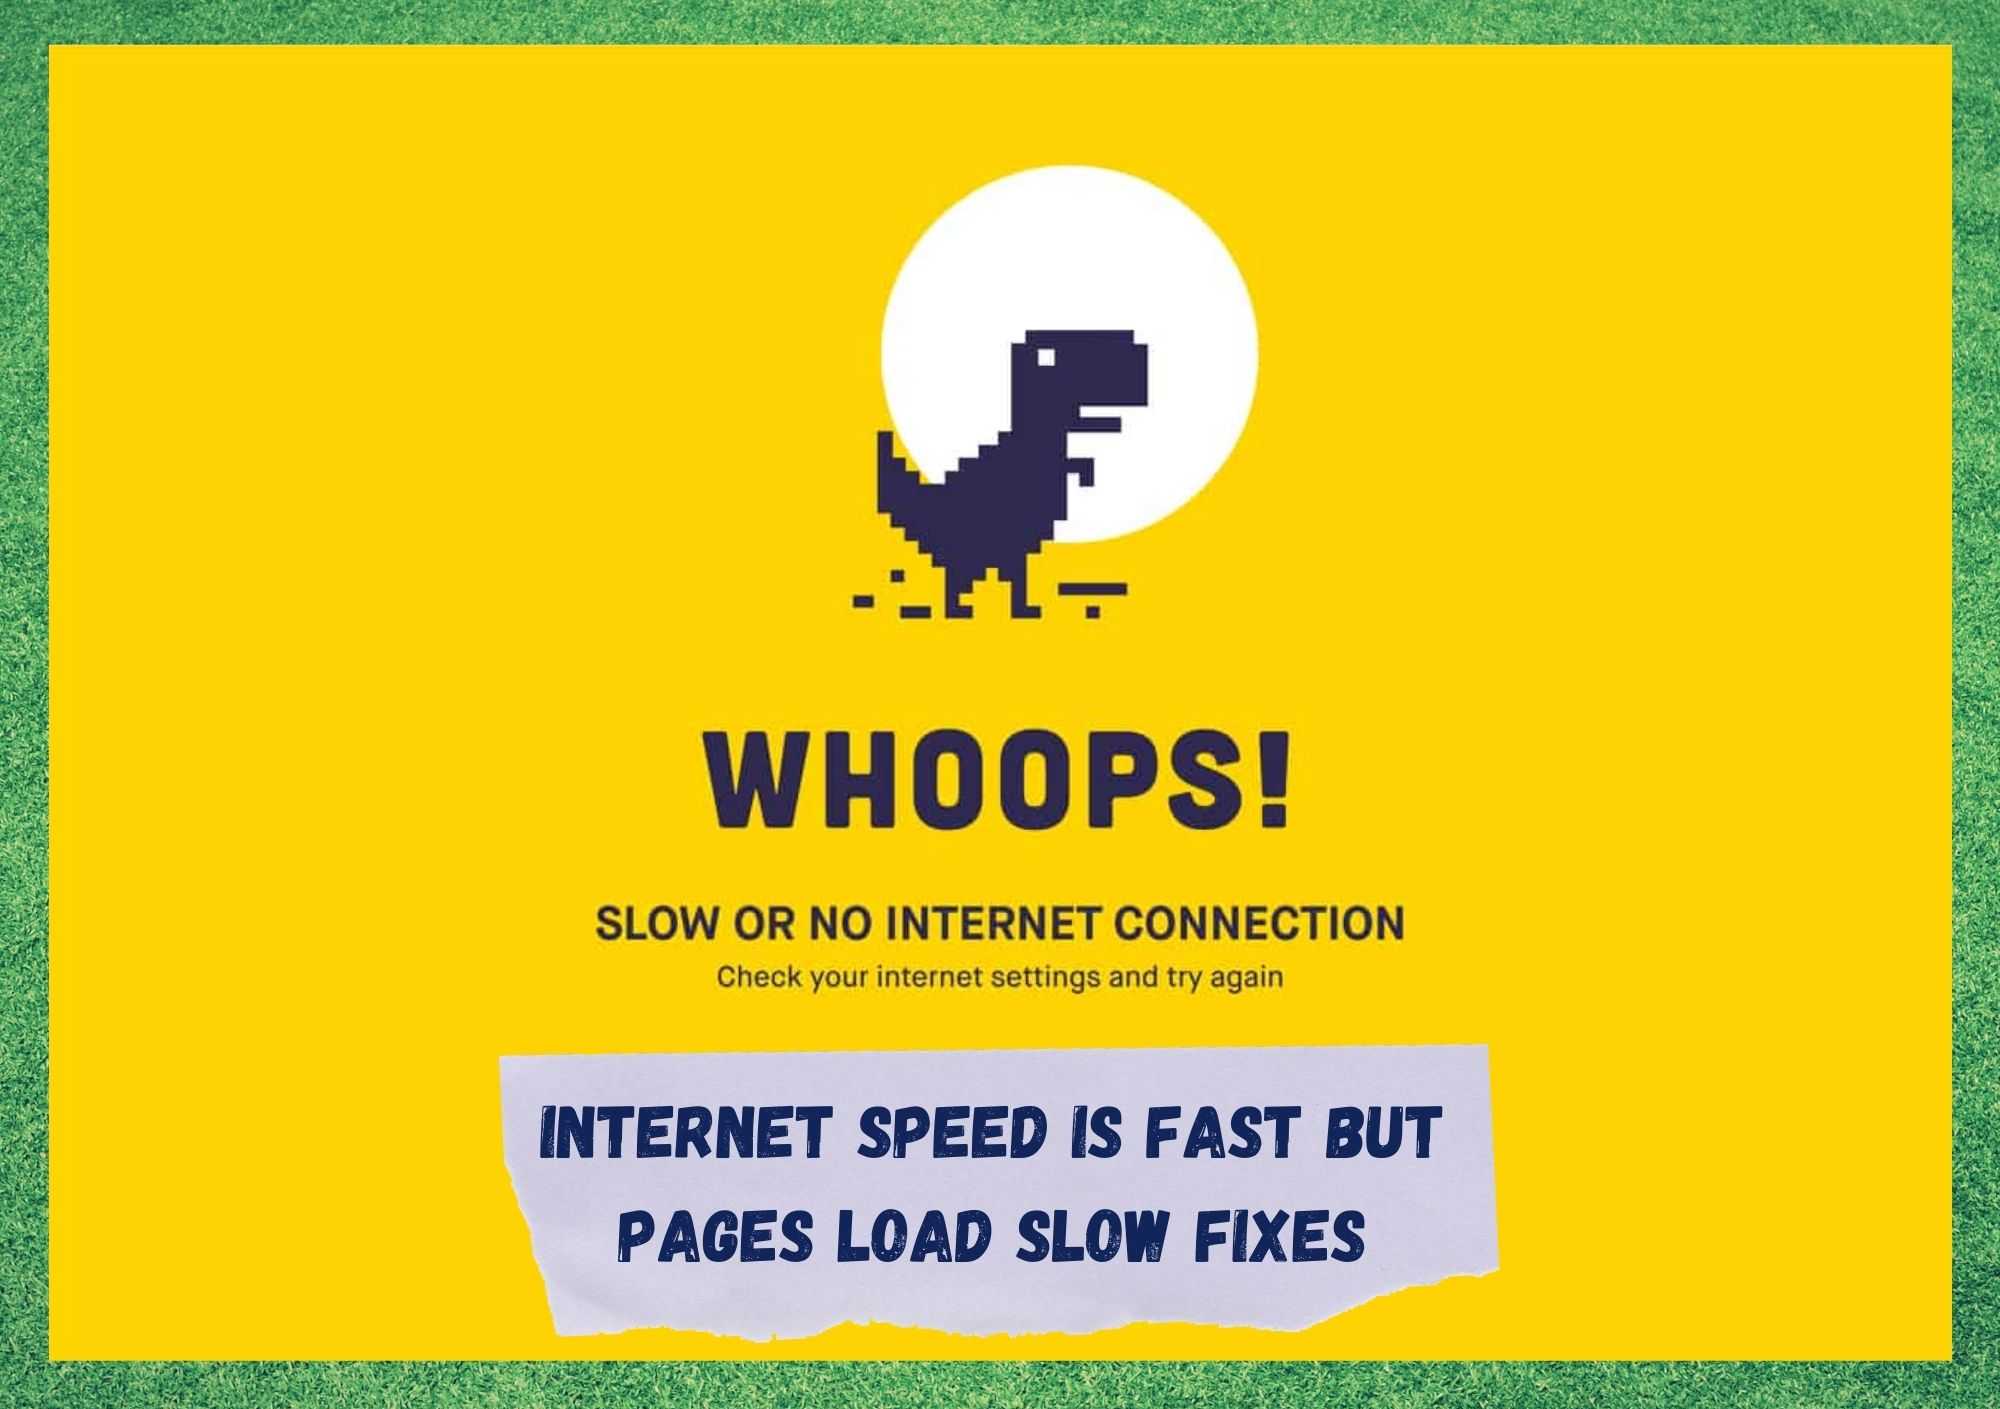 Internet-Geschwindigkeit ist schnell, aber Seiten laden langsam Fix